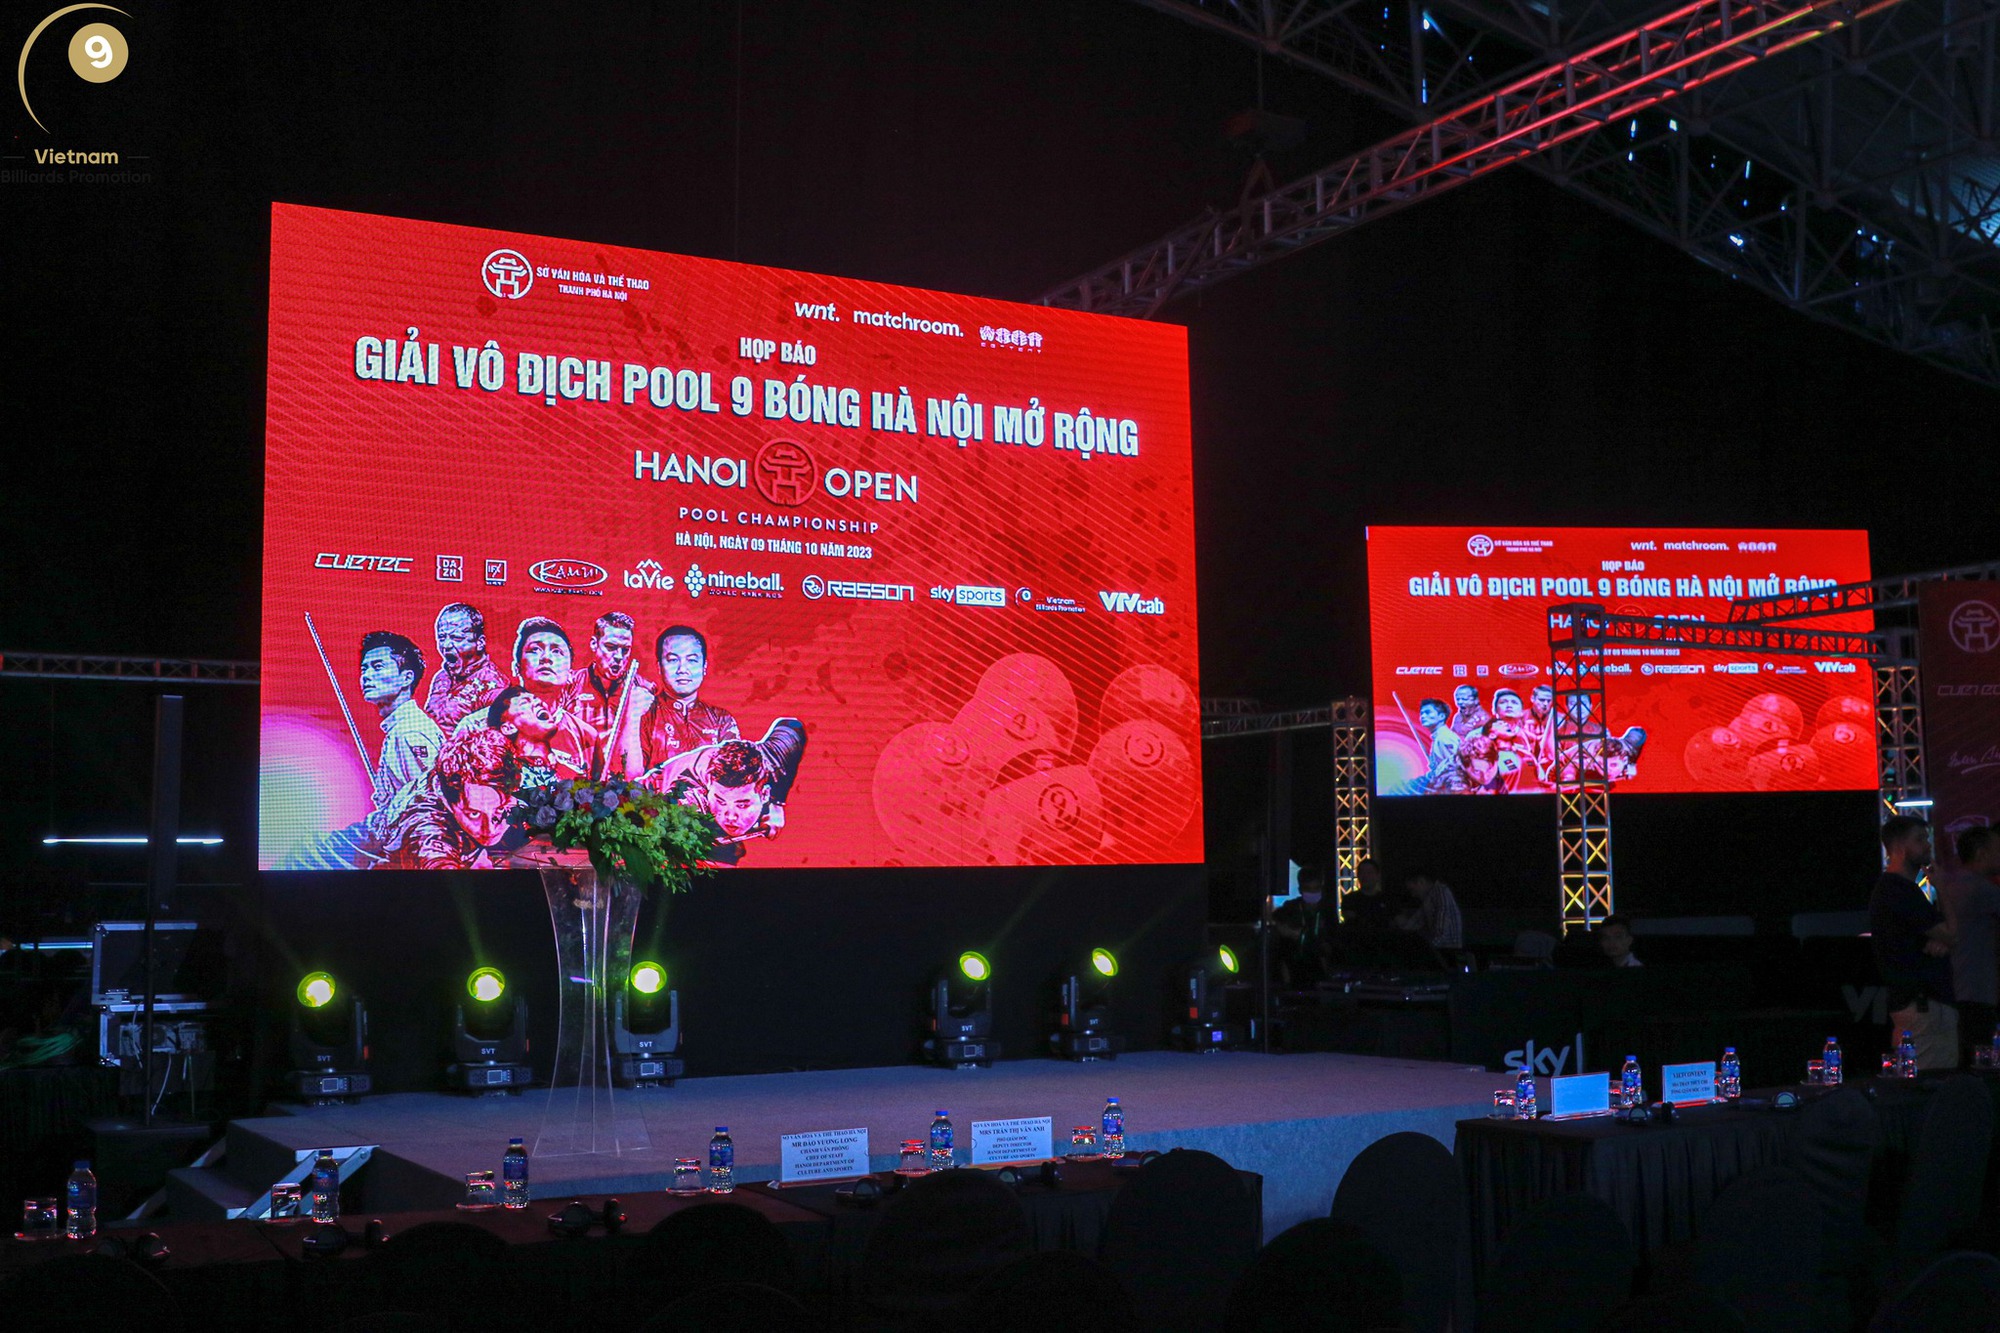 Giải billiards Hanoi Open Championship 2023 khởi tranh: Giải thưởng lên đến 200.000 USD - Ảnh 1.